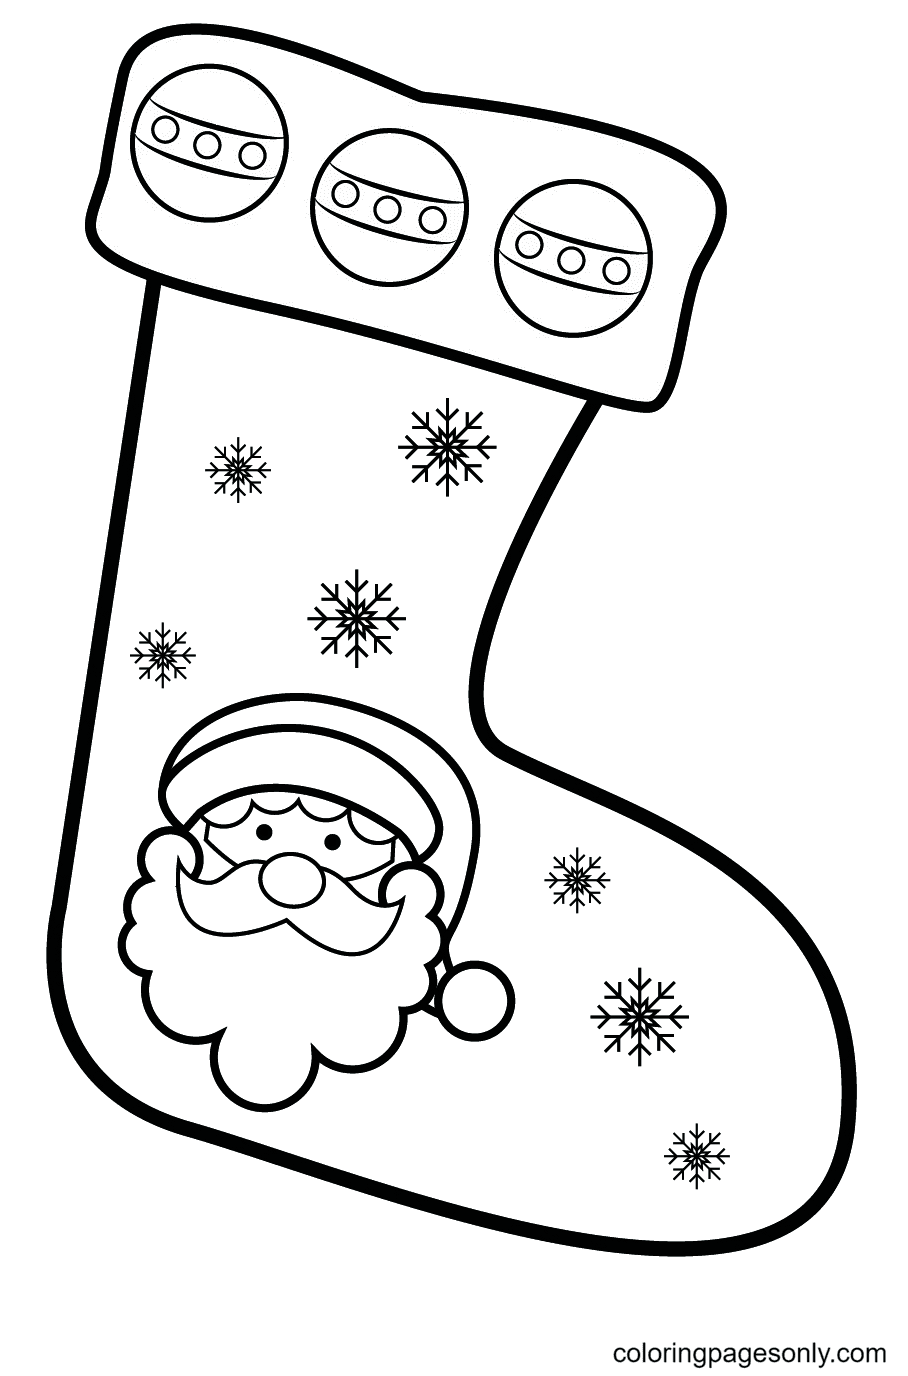 Weihnachtsstrumpf mit Weihnachtsmann von Christmas Stockings